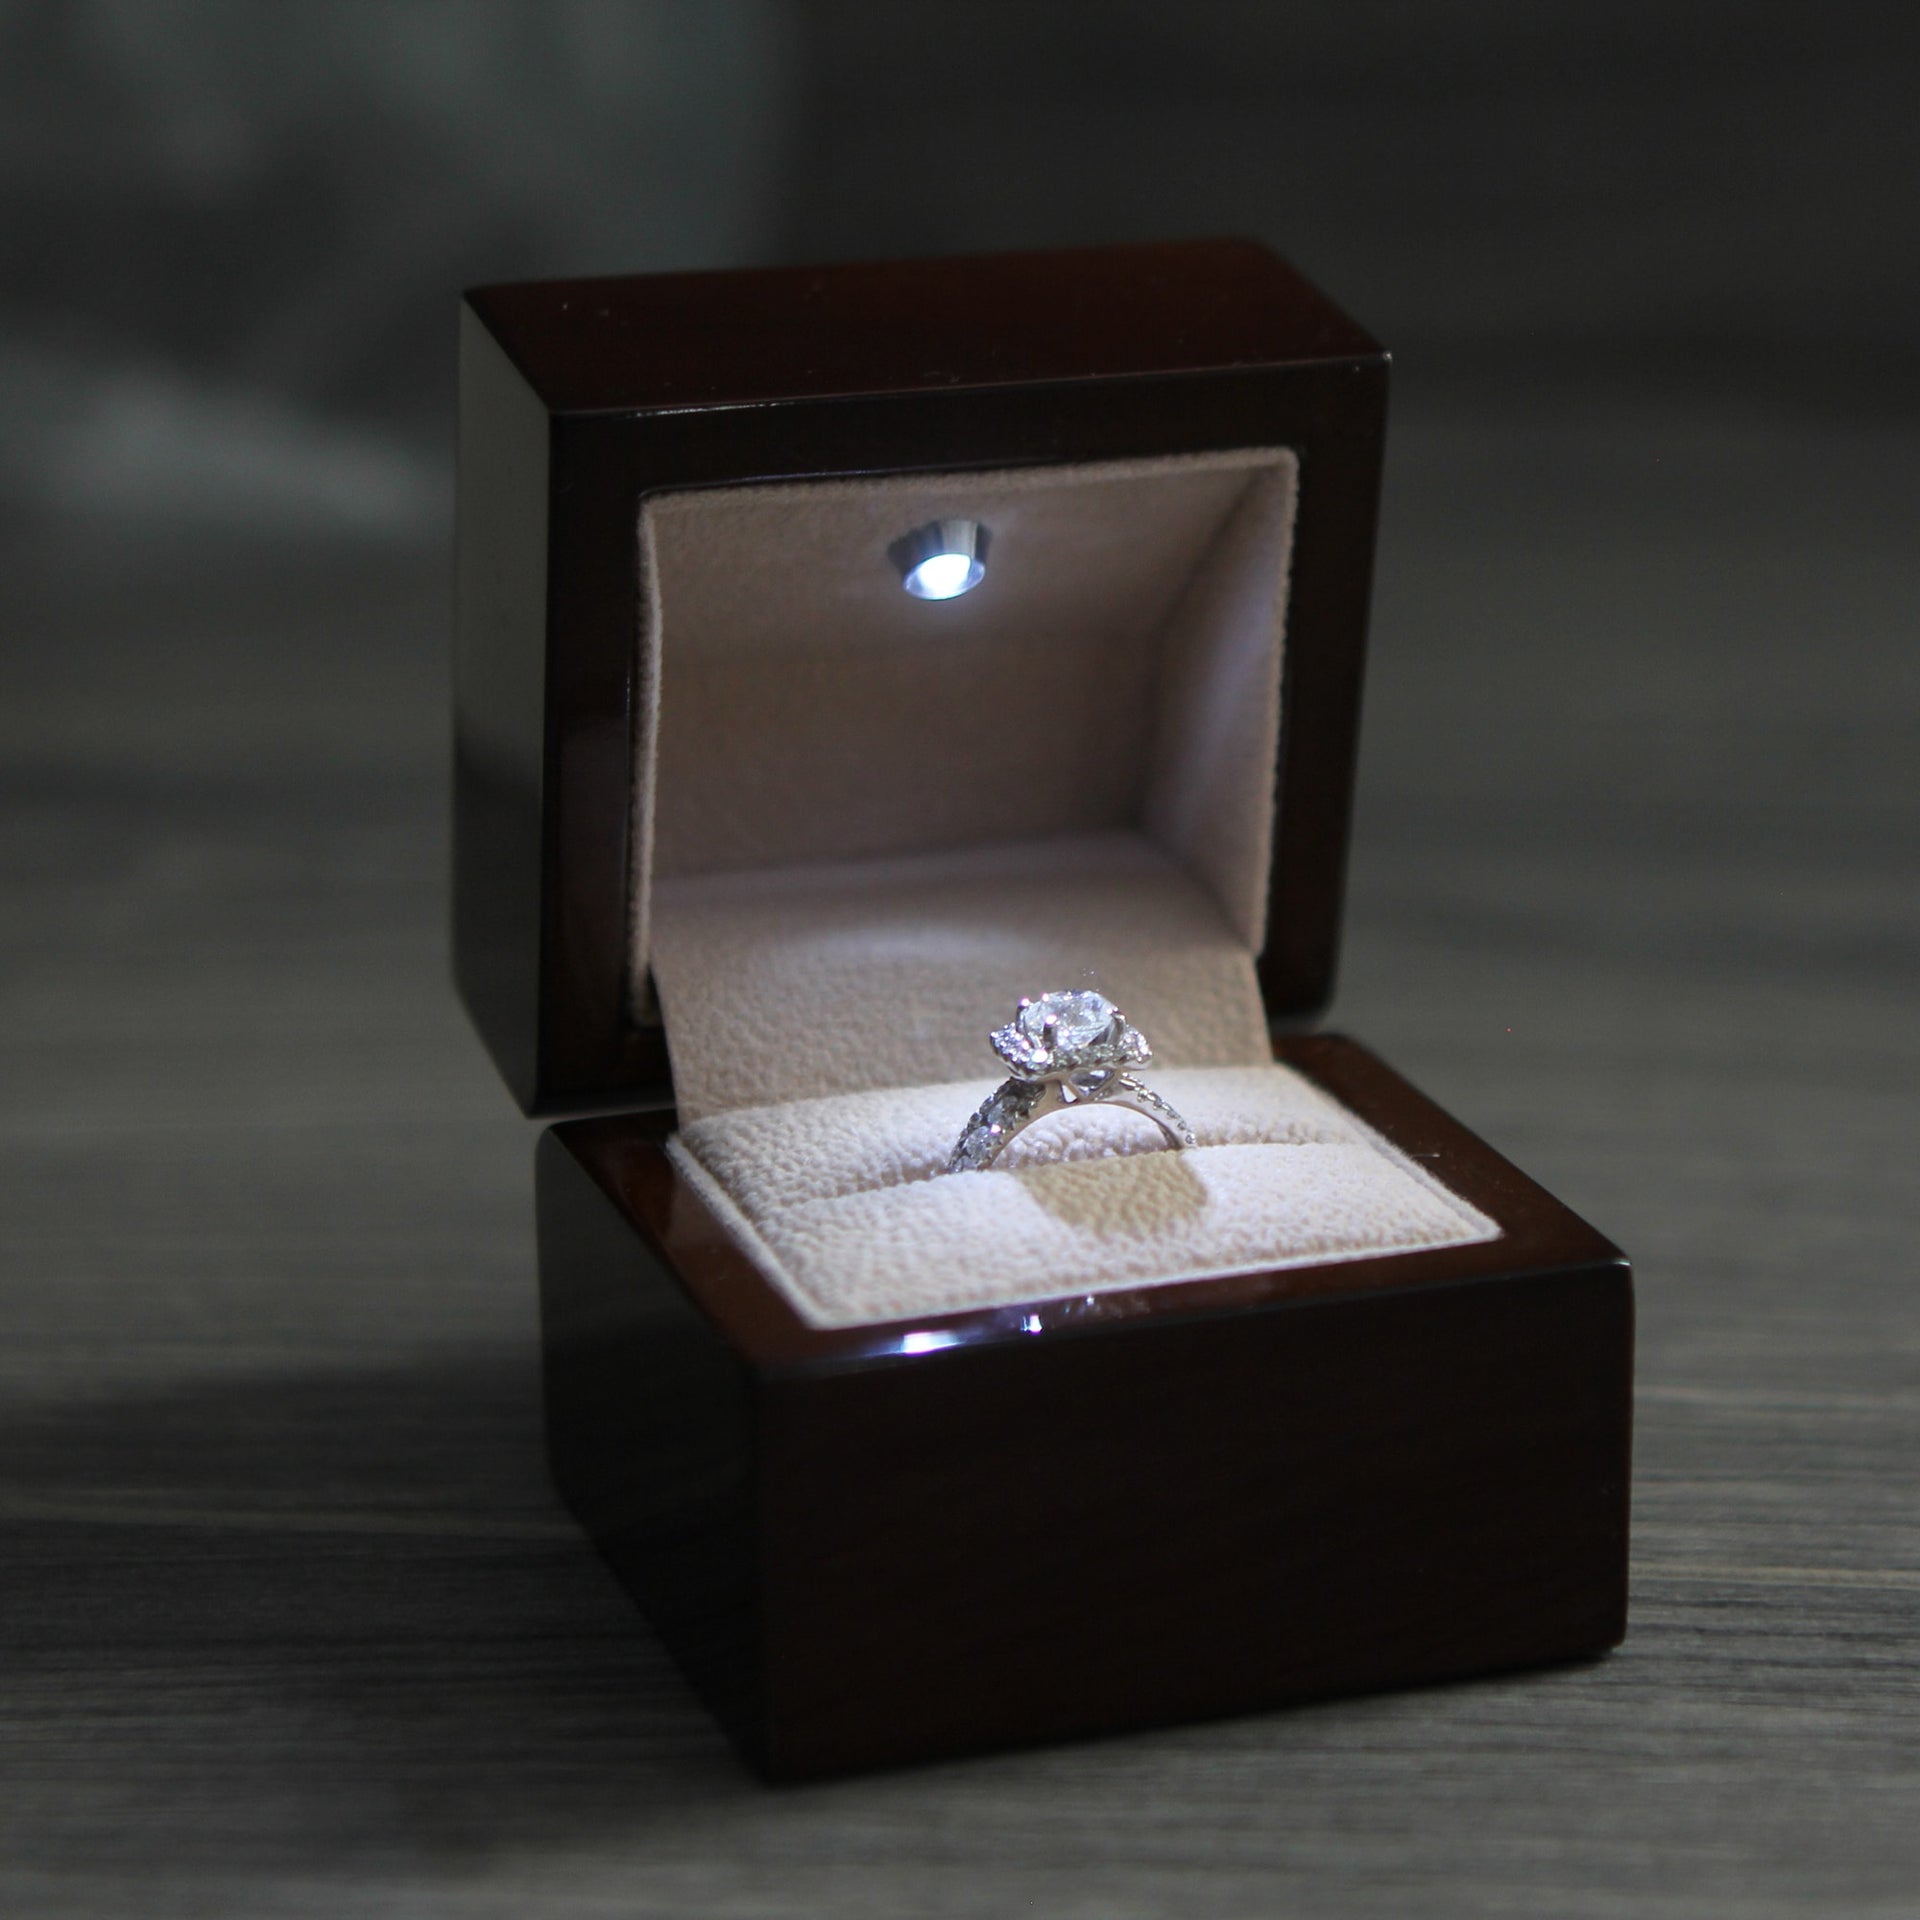 Customizable Ring Box, Mini Jewelry Box, Wood Box, Personalized